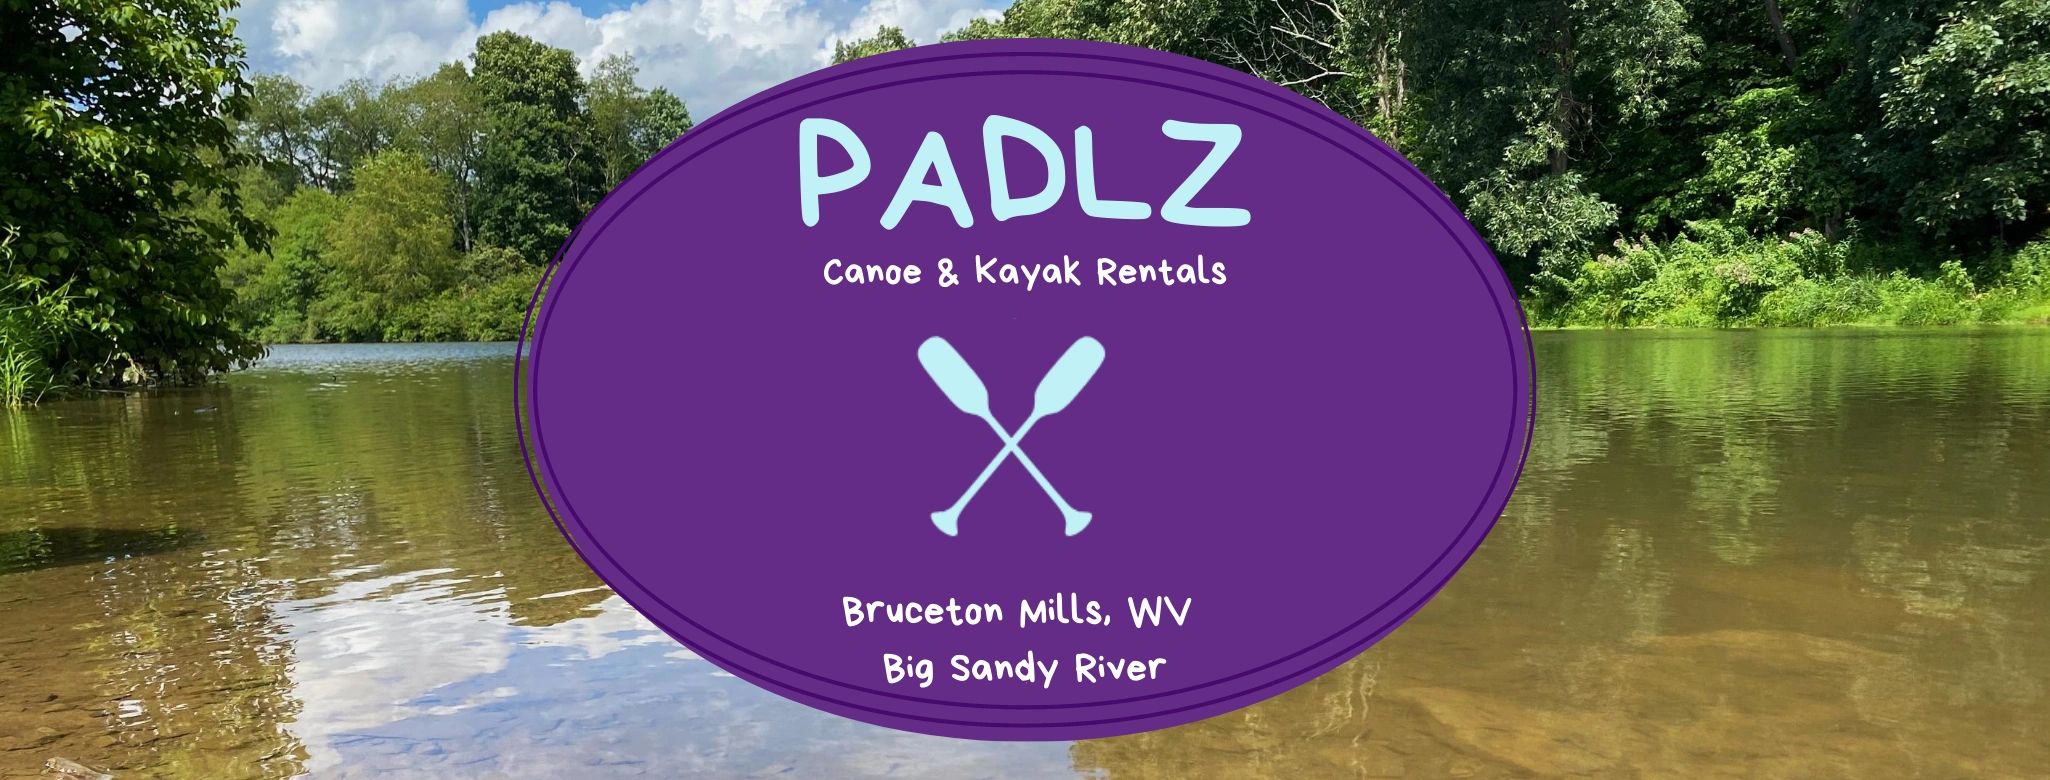 Padlz Canoe Kayak Rentals